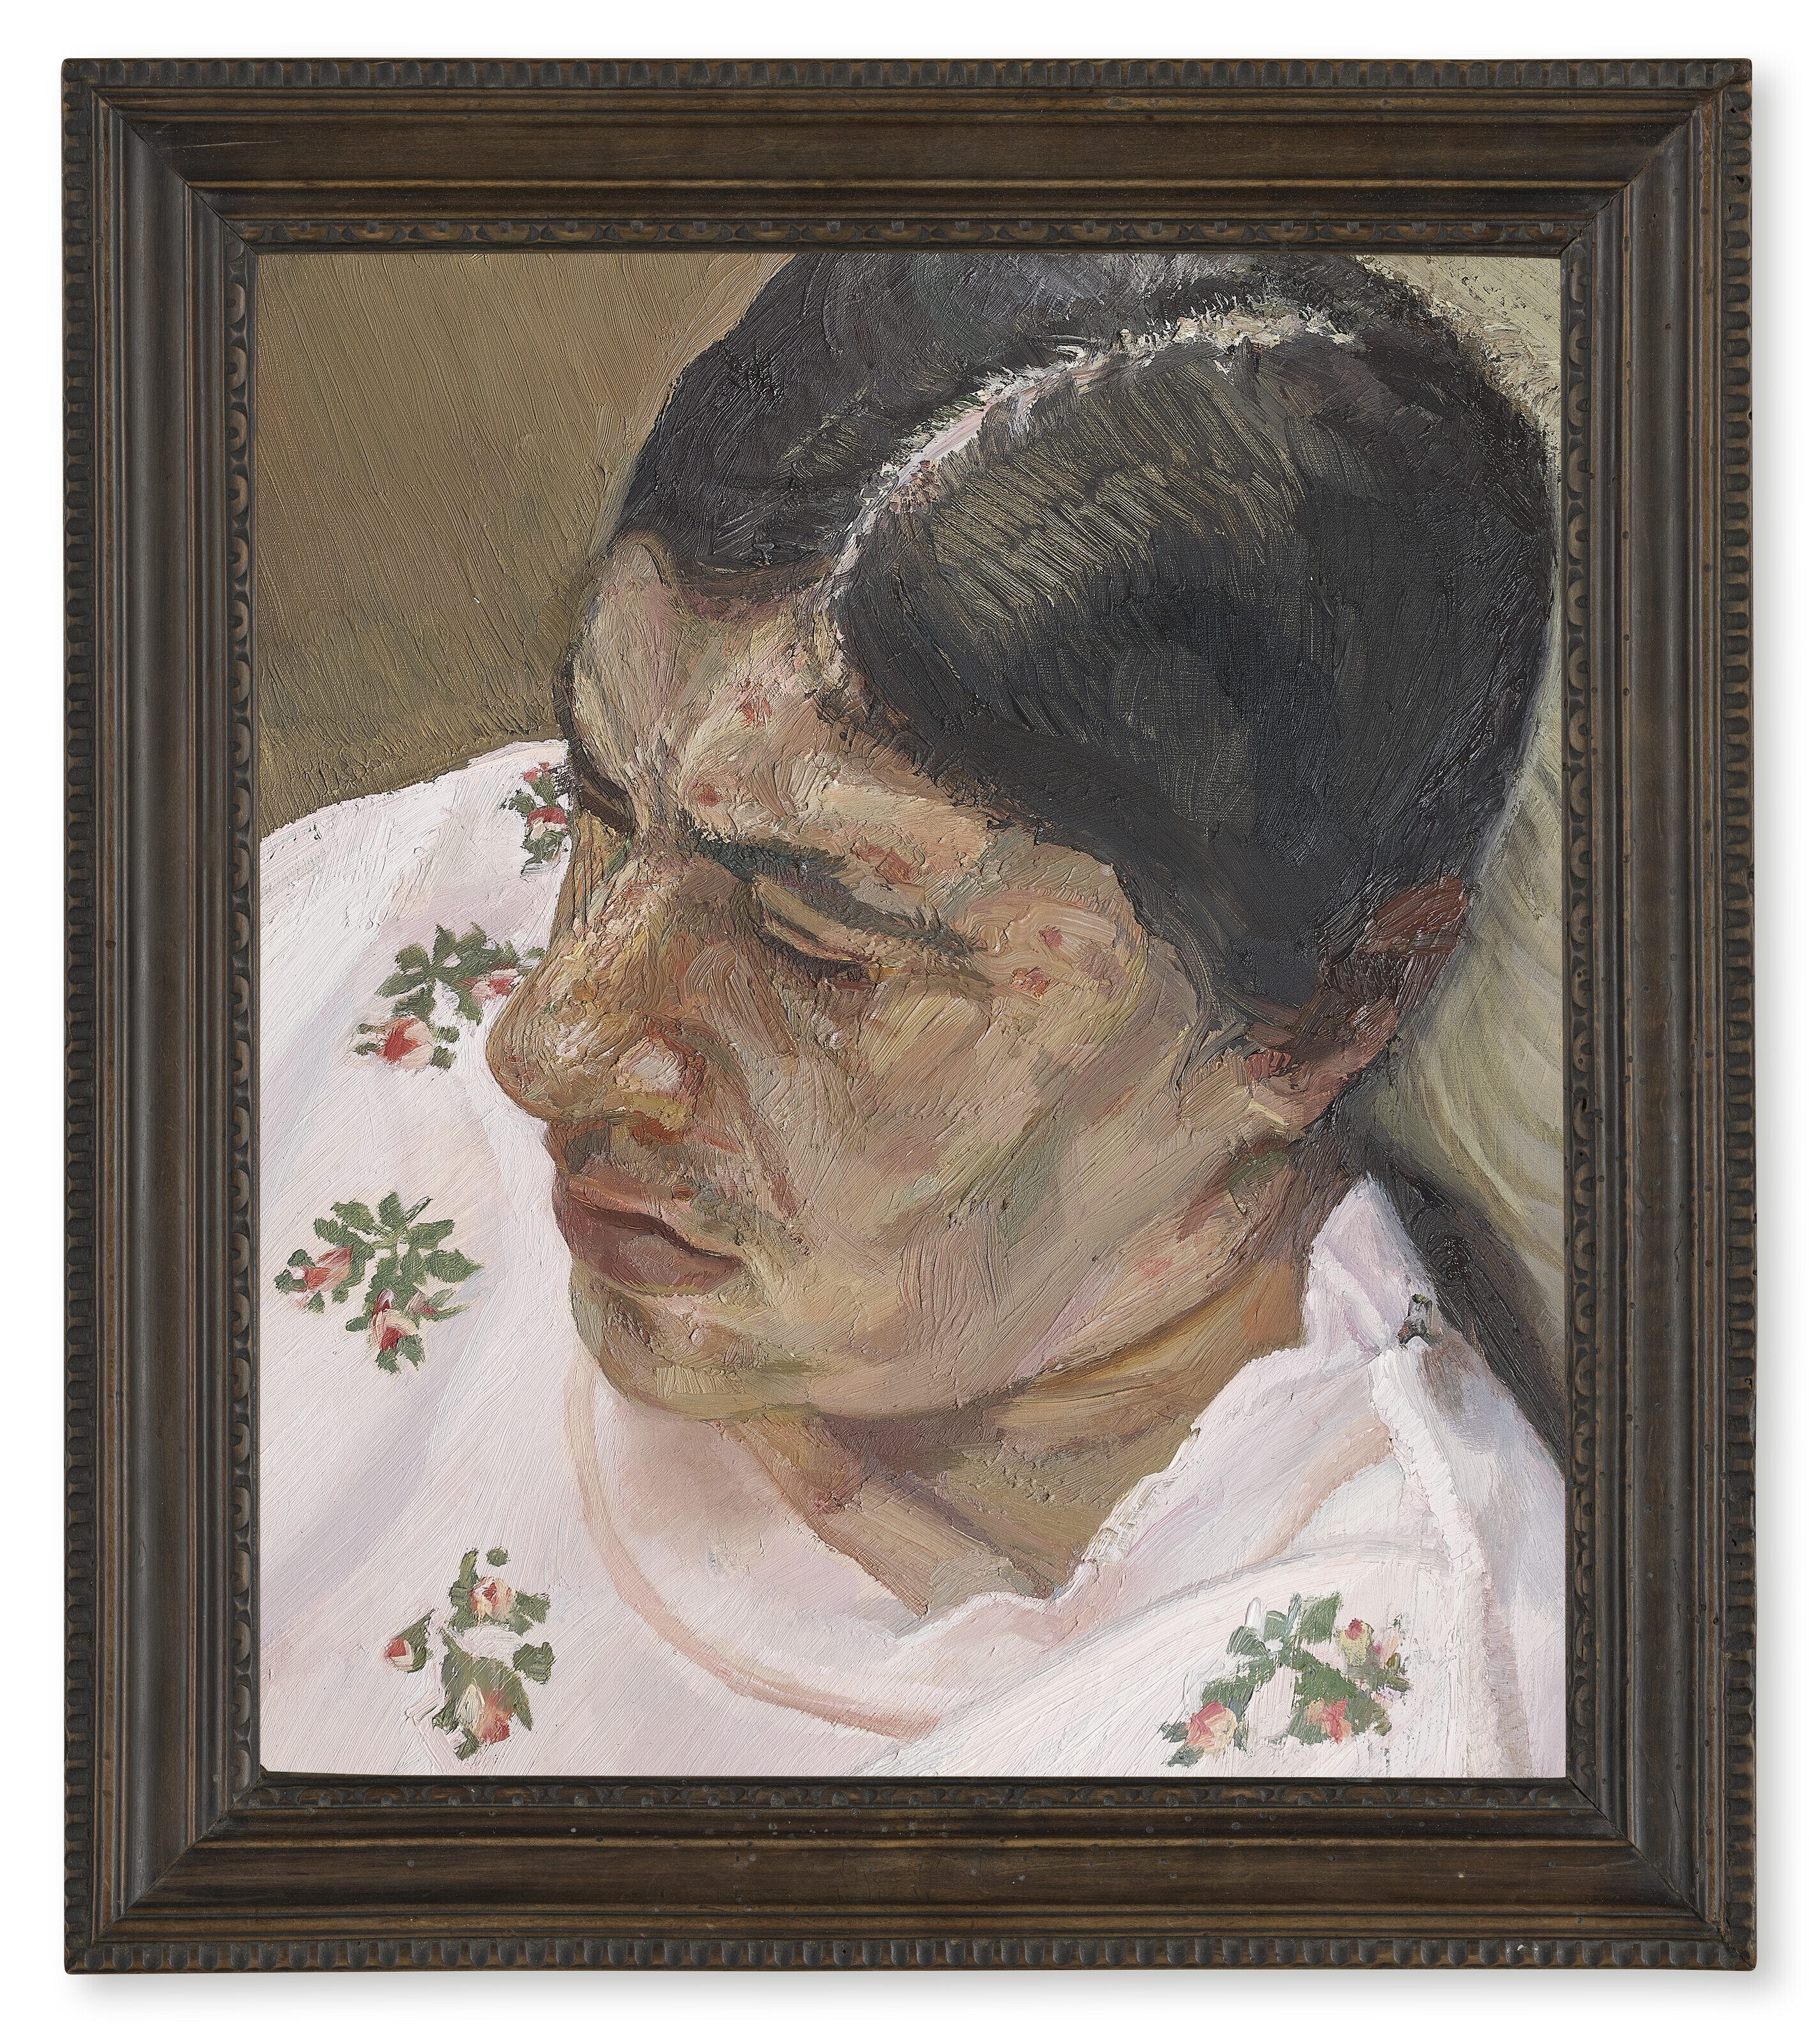 Annabel Portrait III by Lucian Freud, 1987